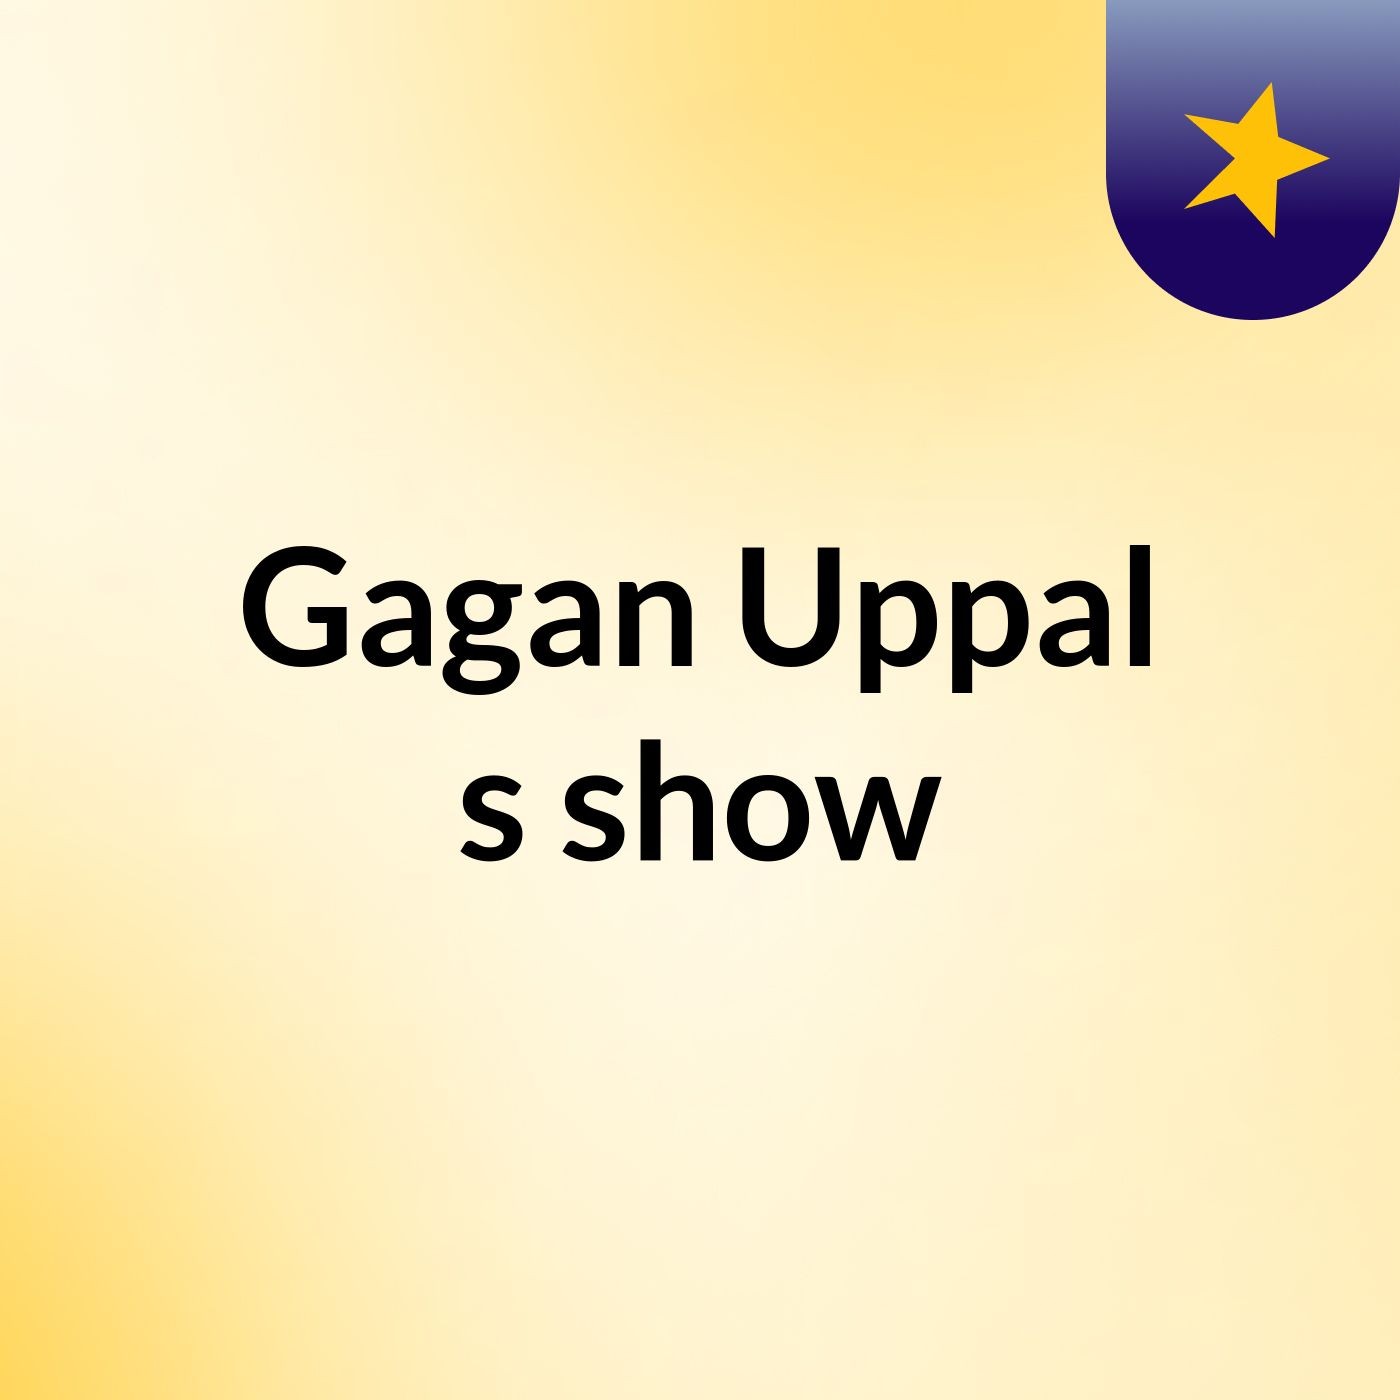 Gagan Uppal's show